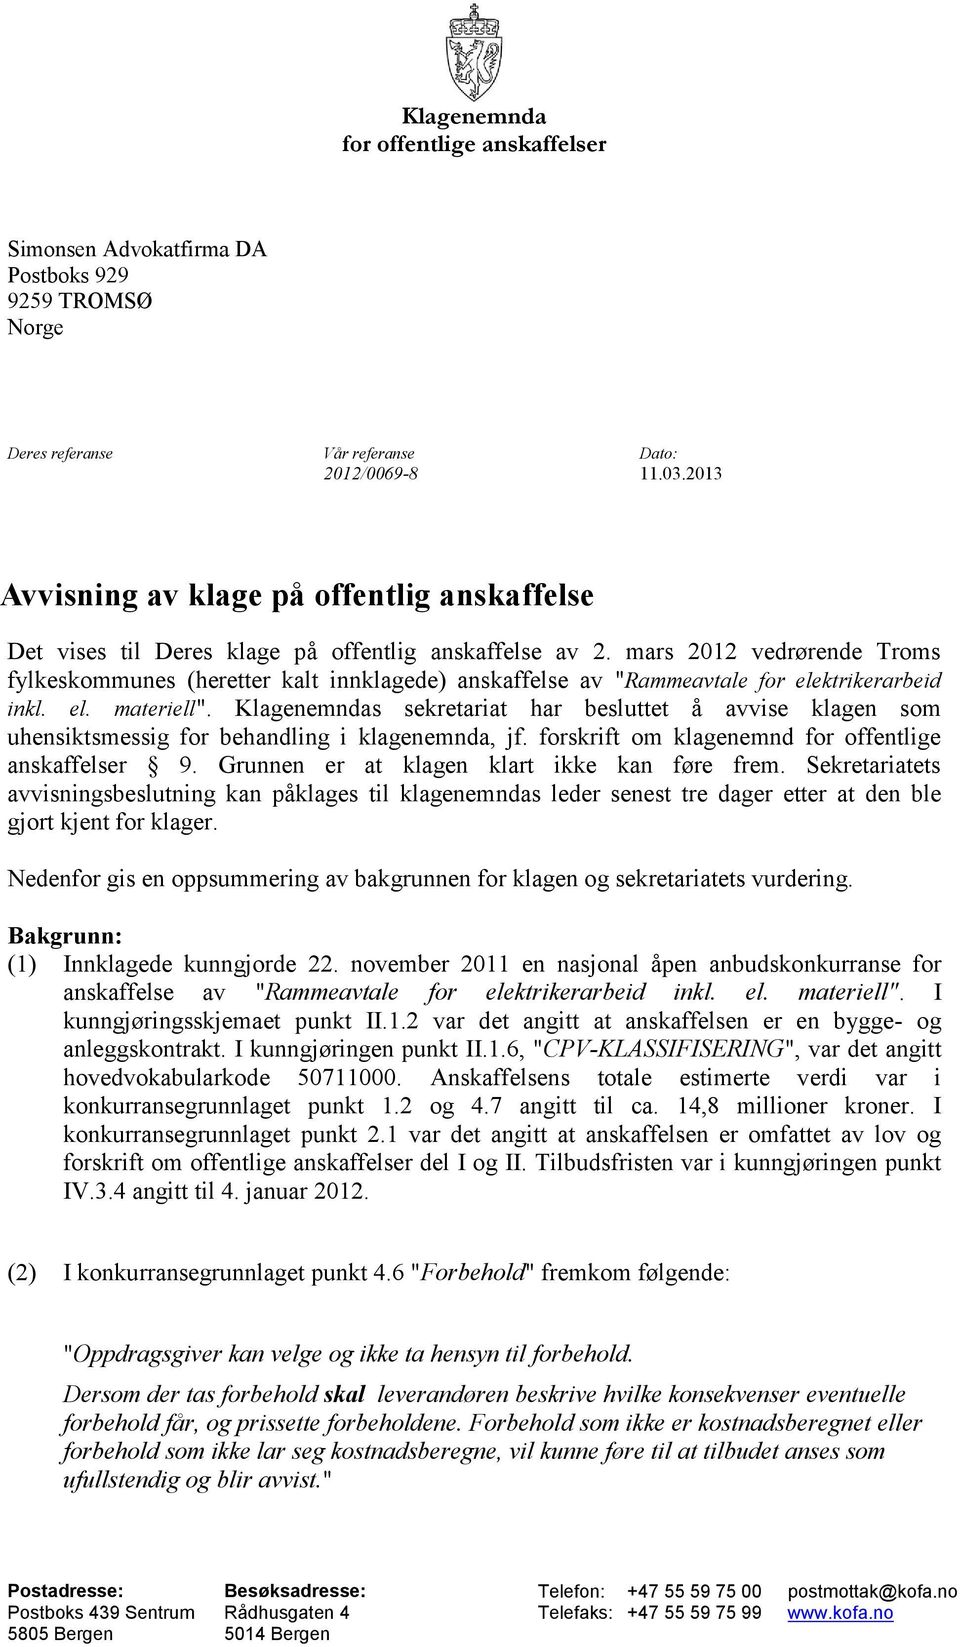 mars 2012 vedrørende Troms fylkeskommunes (heretter kalt innklagede) anskaffelse av "Rammeavtale for elektrikerarbeid inkl. el. materiell".